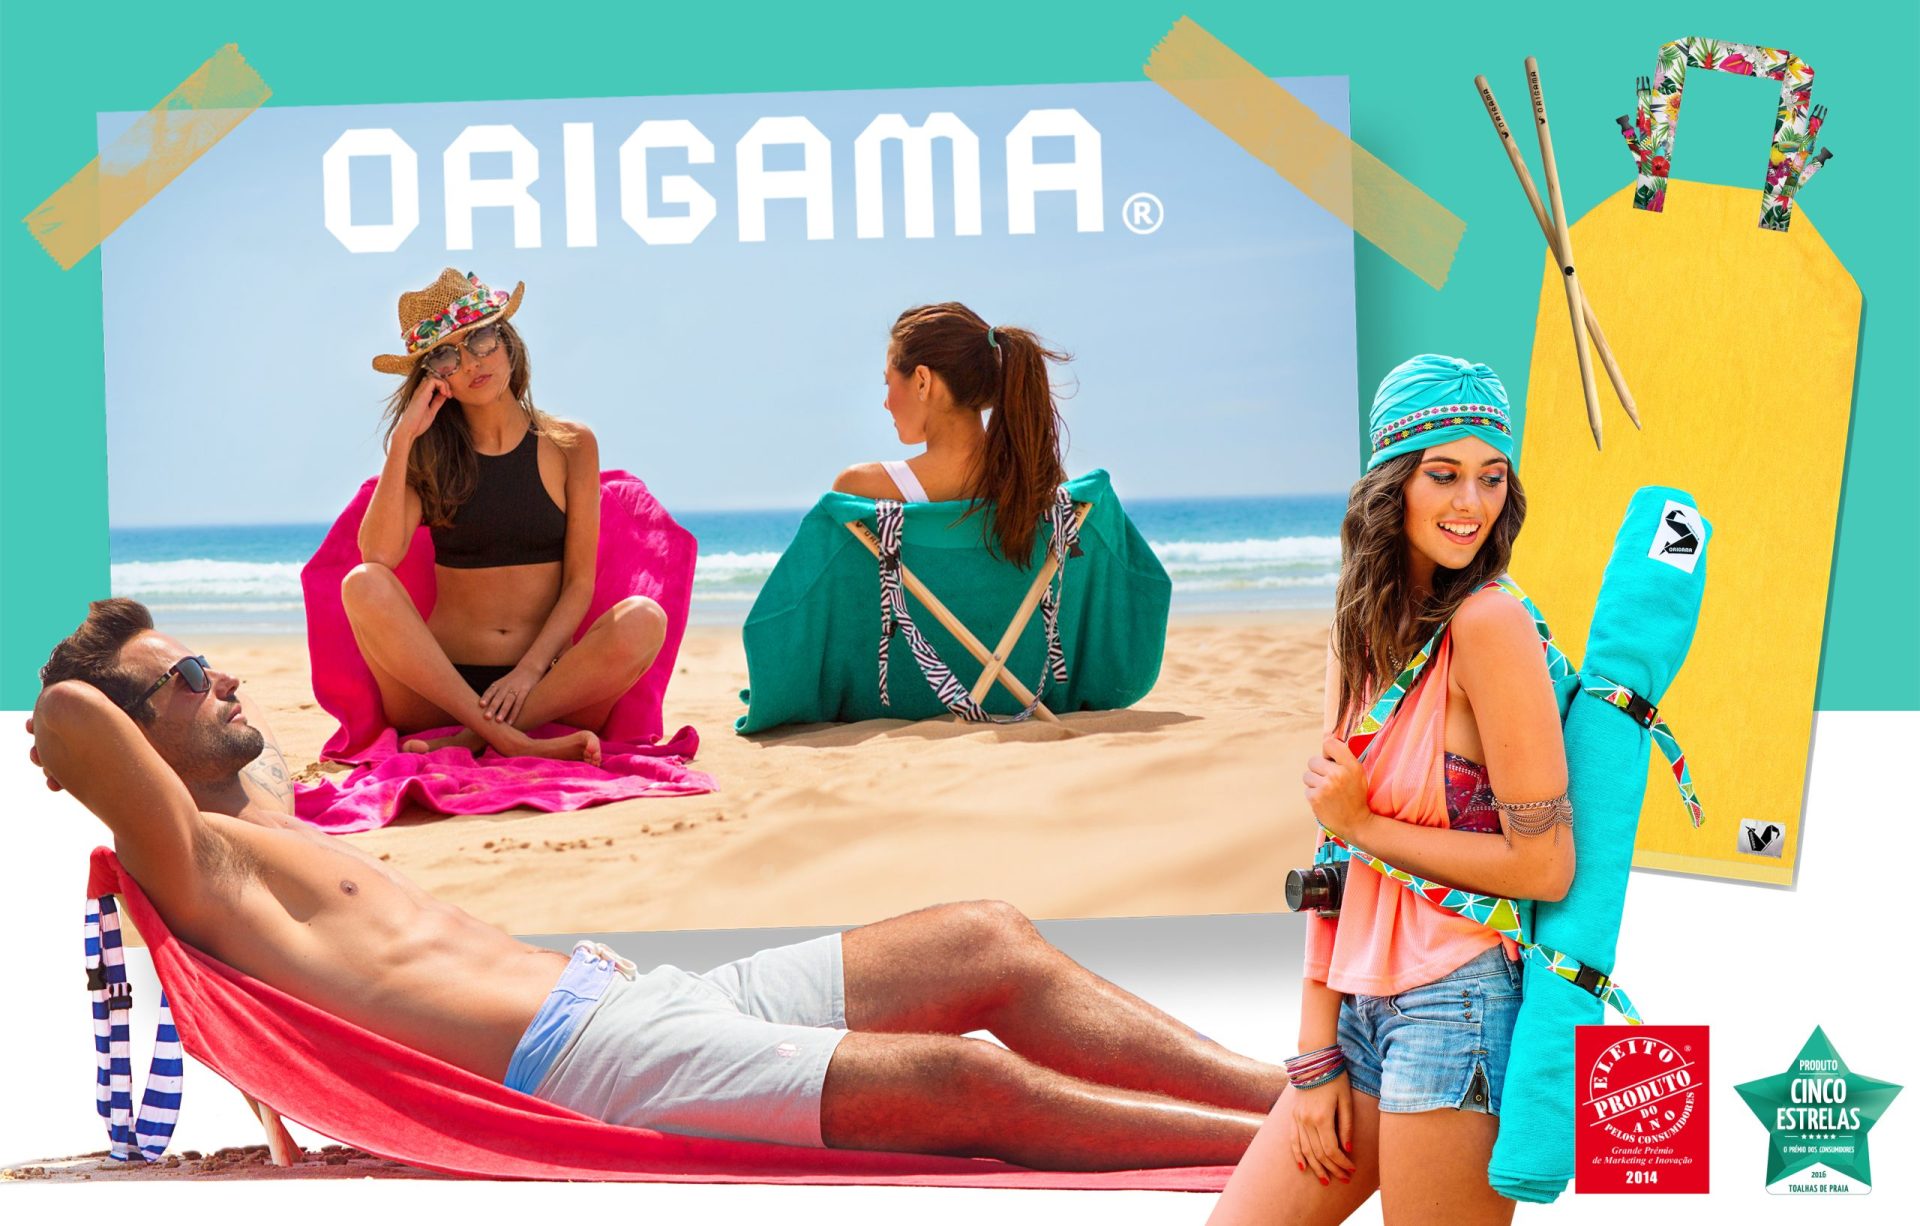 Passatempo: Ganhe uma toalha de praia Origama